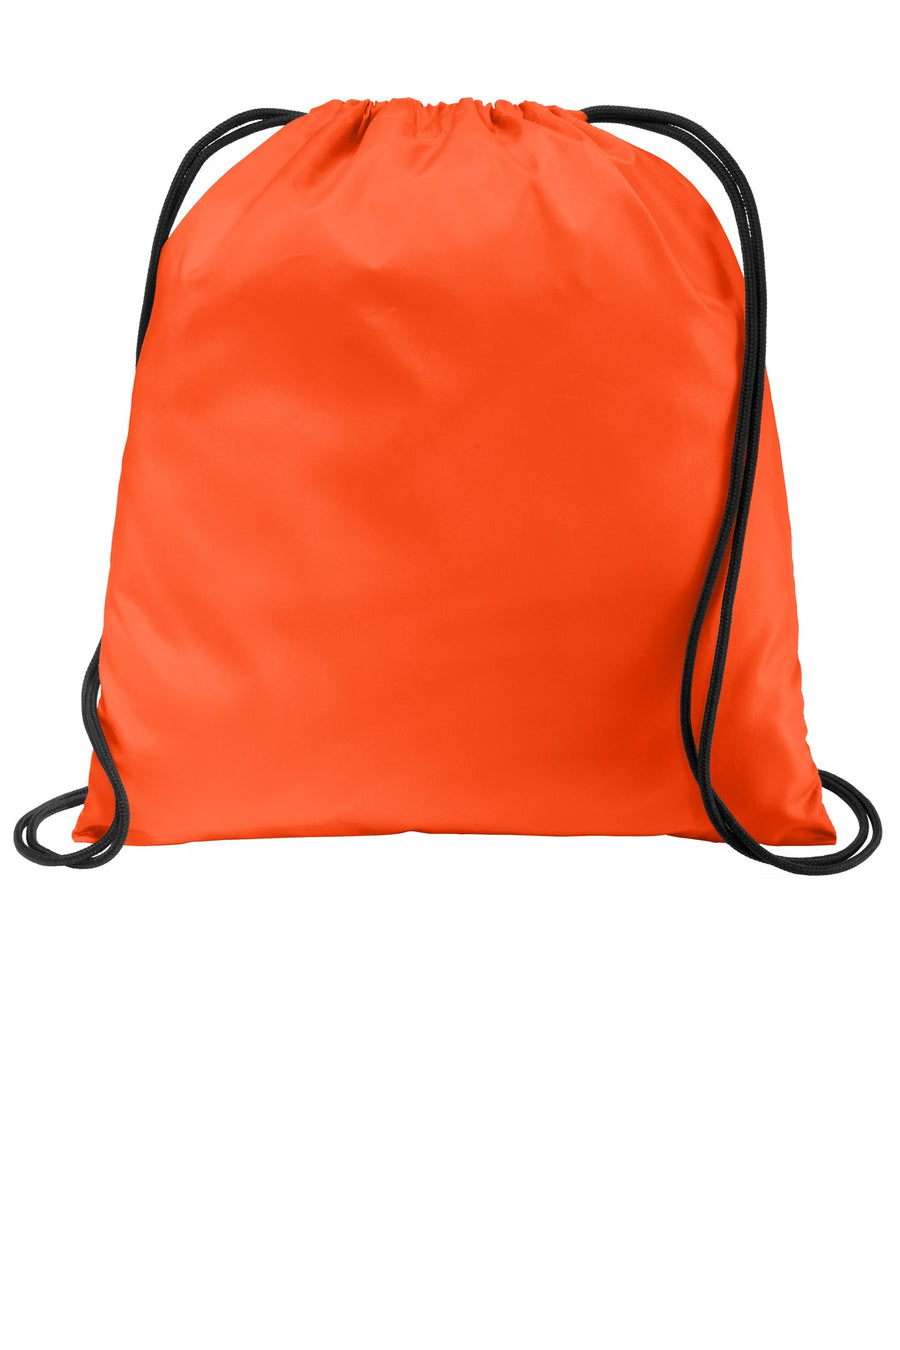 BG615-Orange-front_model